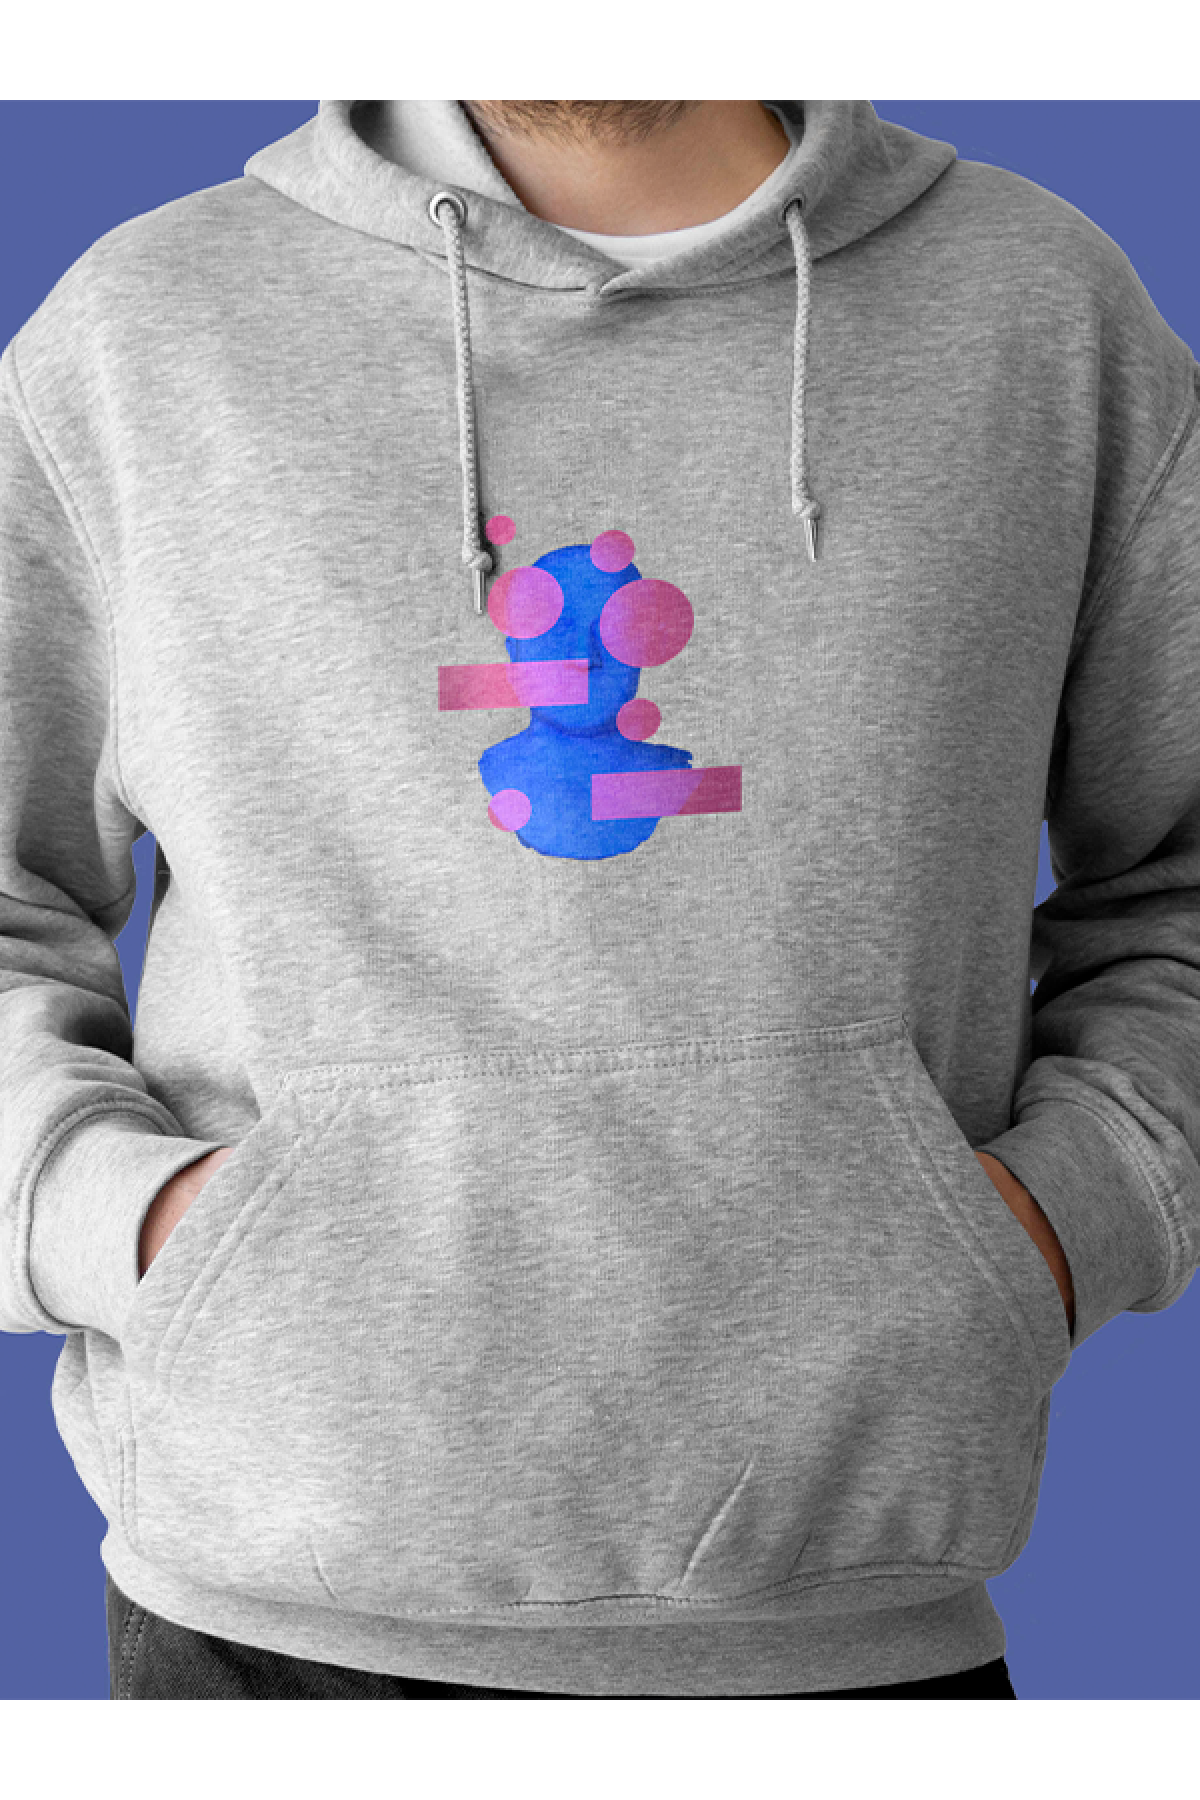 MIJUSTORE Bubble Heykel Baskılı Tasarım 2 İplik Şardonlu Gri Hoodie Sweatshirt